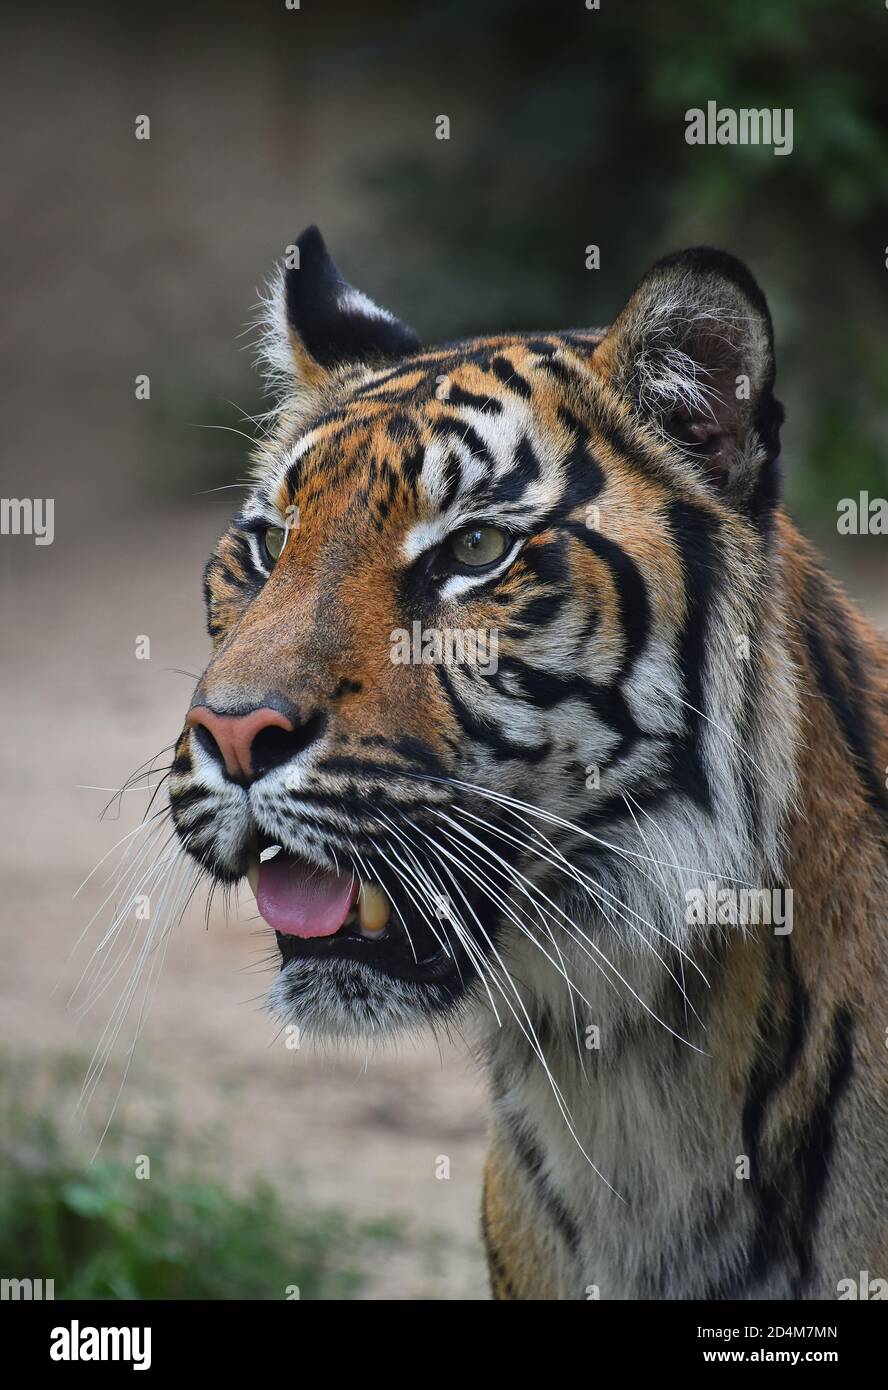 Primer plano retrato de un joven tigre de Sumatra (Panthera tigris sondaica) mirando la cámara alertada con boca abierta, vista en ángulo alto Foto de stock